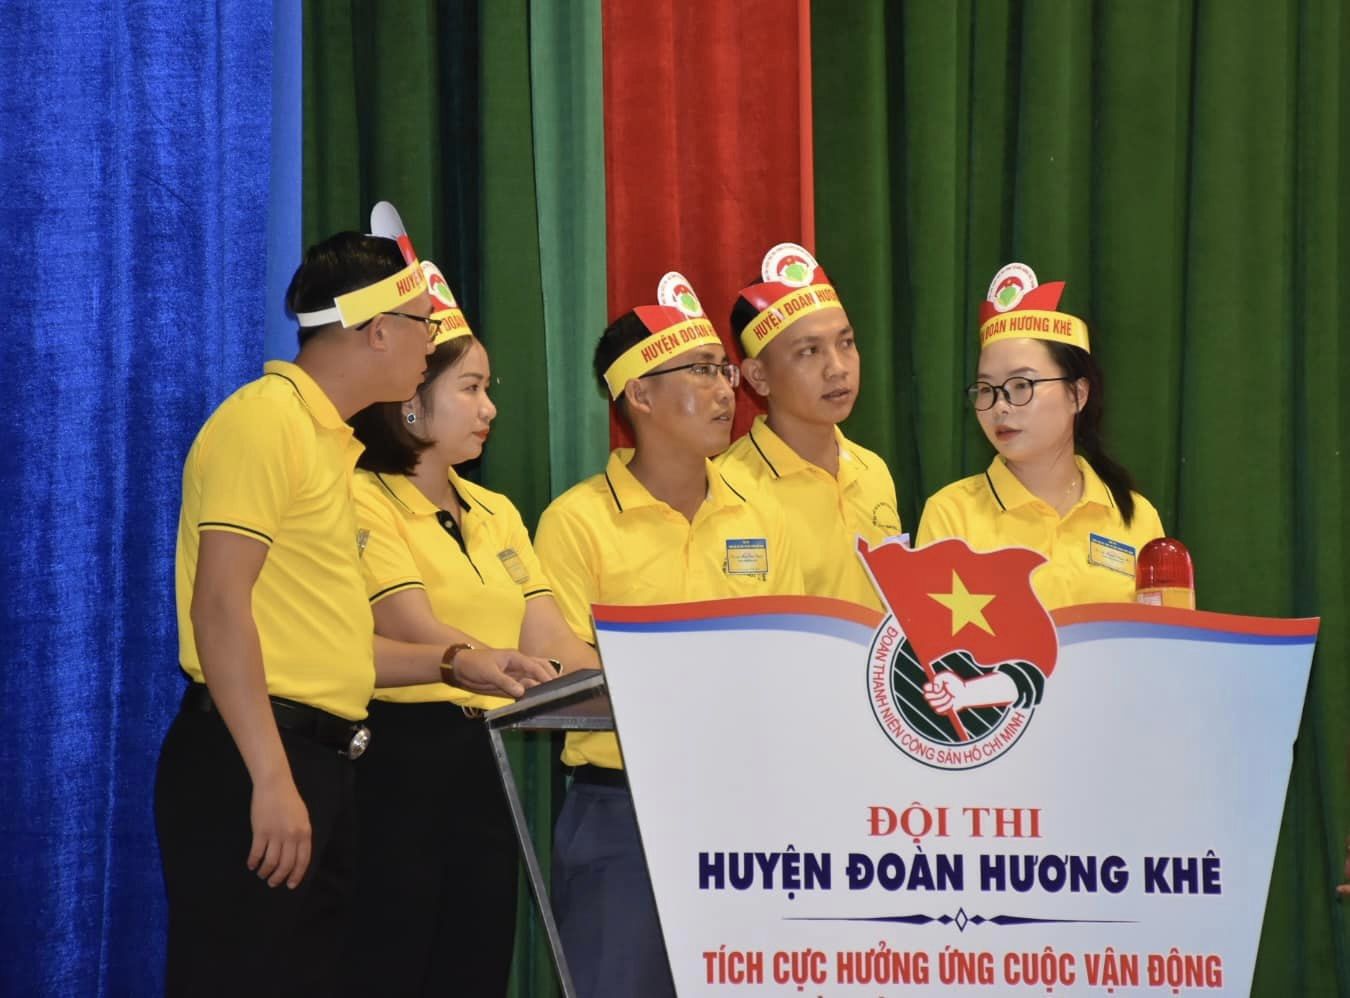 Huyện đoàn Hương Khê xuất sắc giành Giải Nhất Hội thi “Tuổi trẻ Hà Tĩnh tự hào hàng Việt Nam” năm 2022